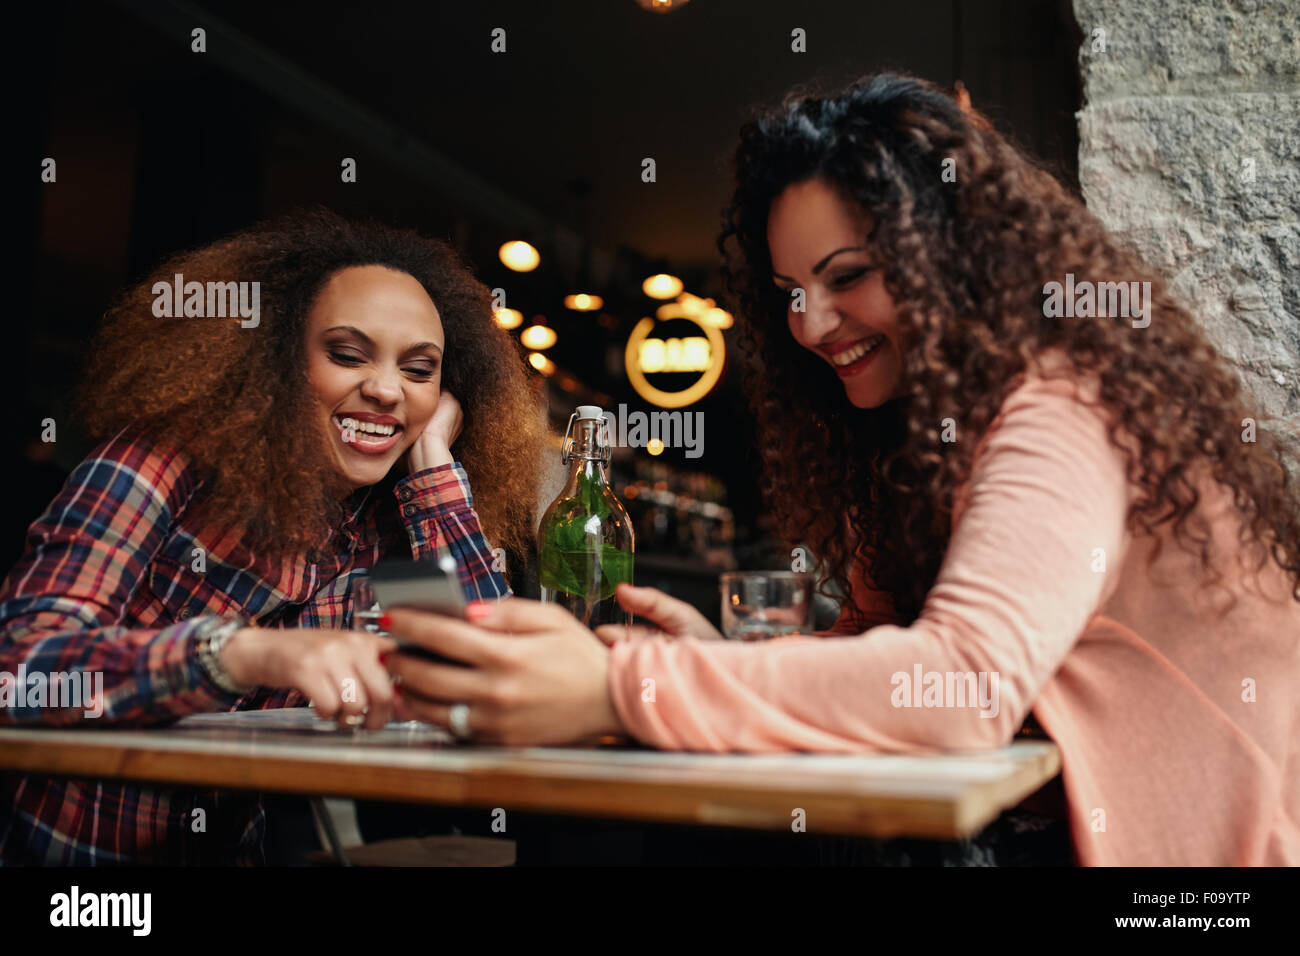 Deux jeunes femmes s'amuser ensemble, à l'aide d'un téléphone intelligent. Happy young female friends sitting together at cafe. Banque D'Images